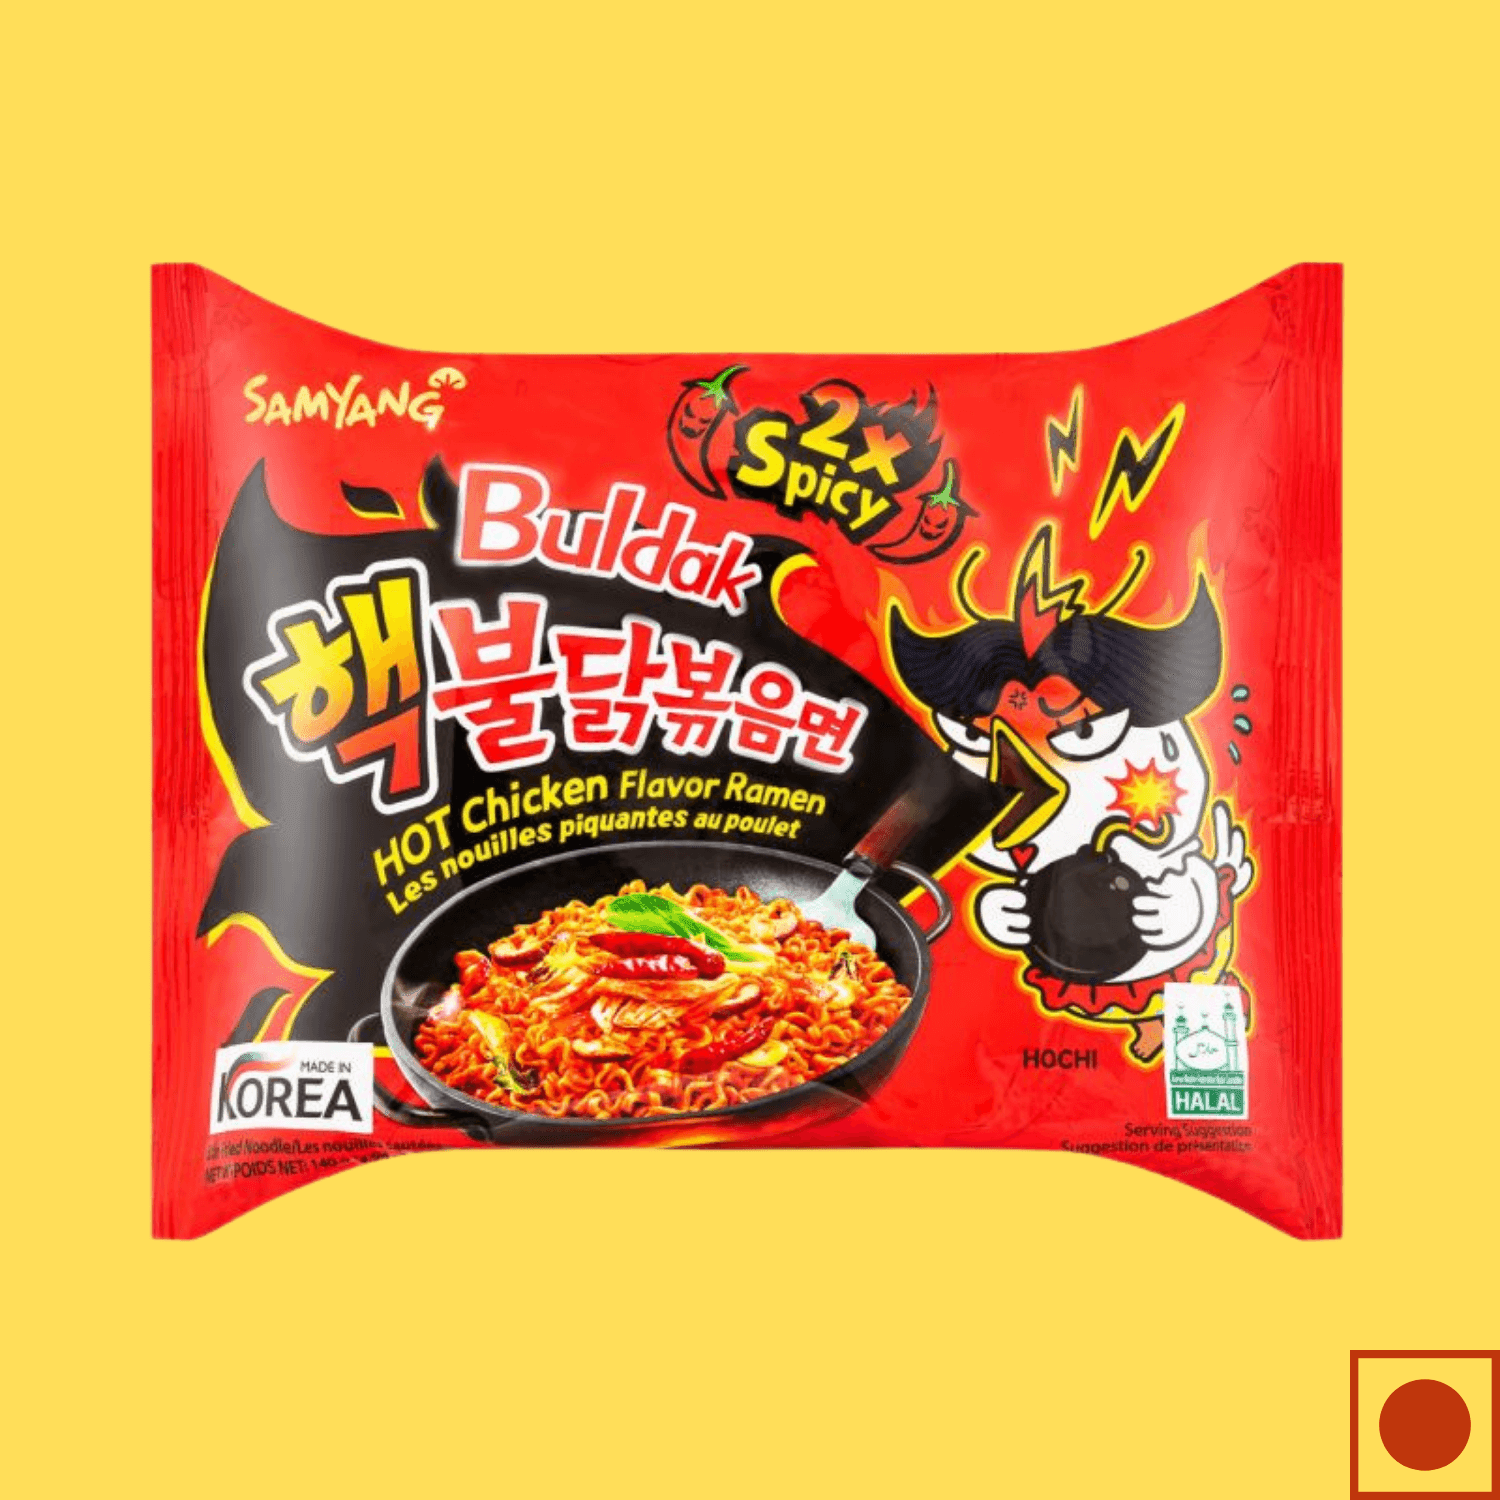 Samyang Hot Chicken 2X Spicy Buldak Noodles, 140g (Imported) - Super 7 Mart